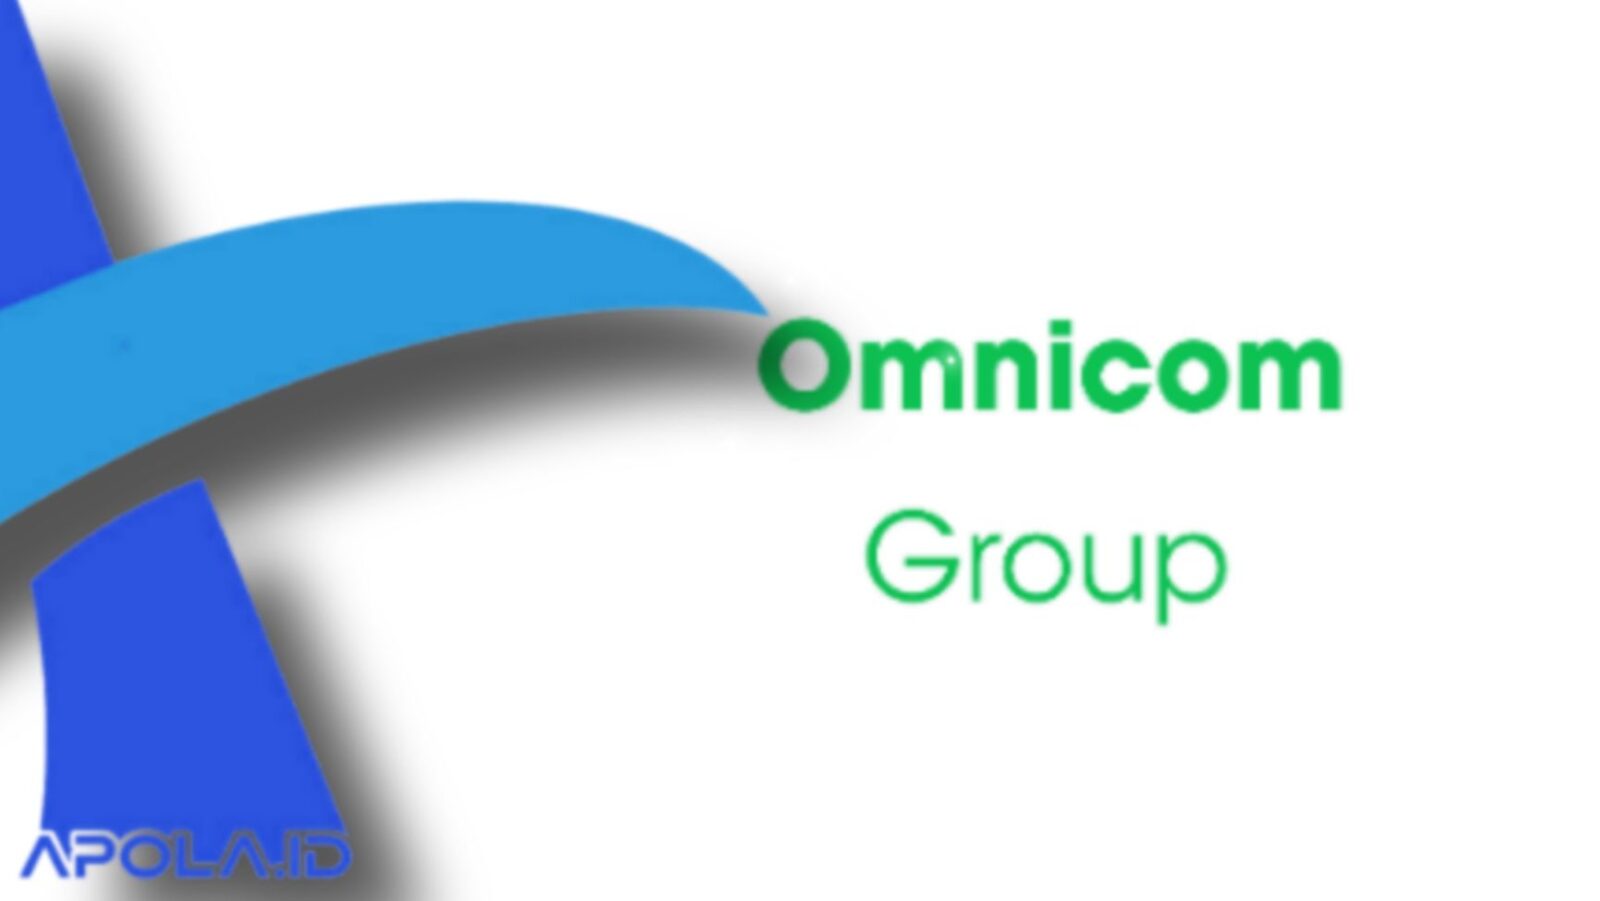 Review Aplikasi OmnicomGroup Penghasil Uang Terbaru 2021 Yang Katanya Membayar!